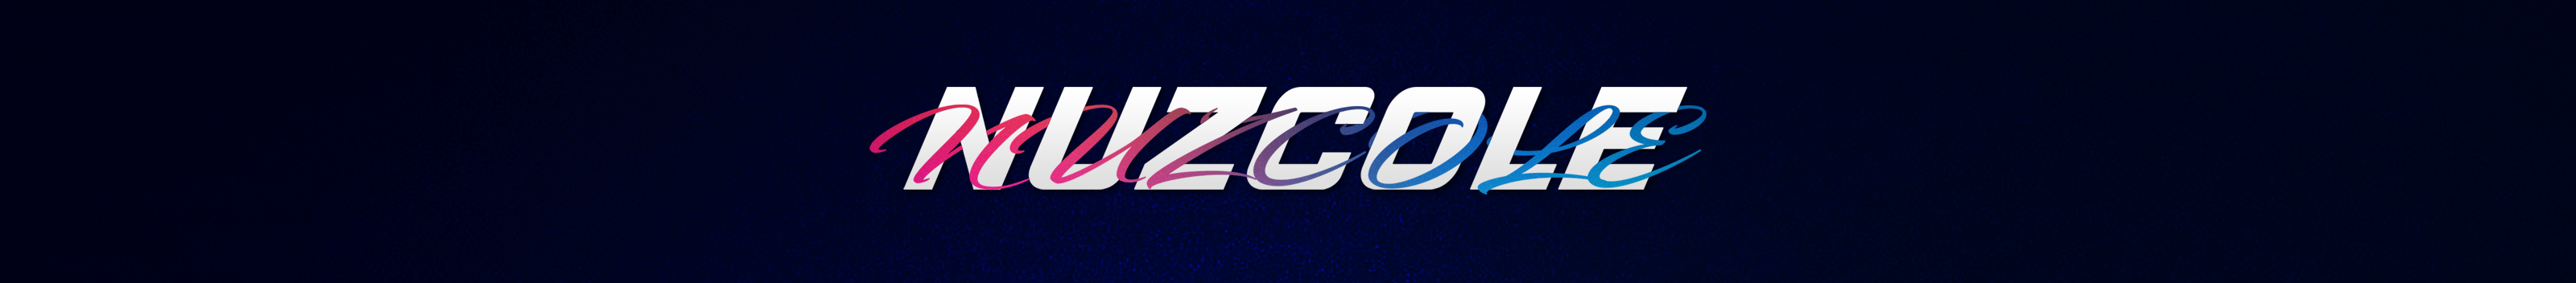 Nuzcole ♠️'s profile banner